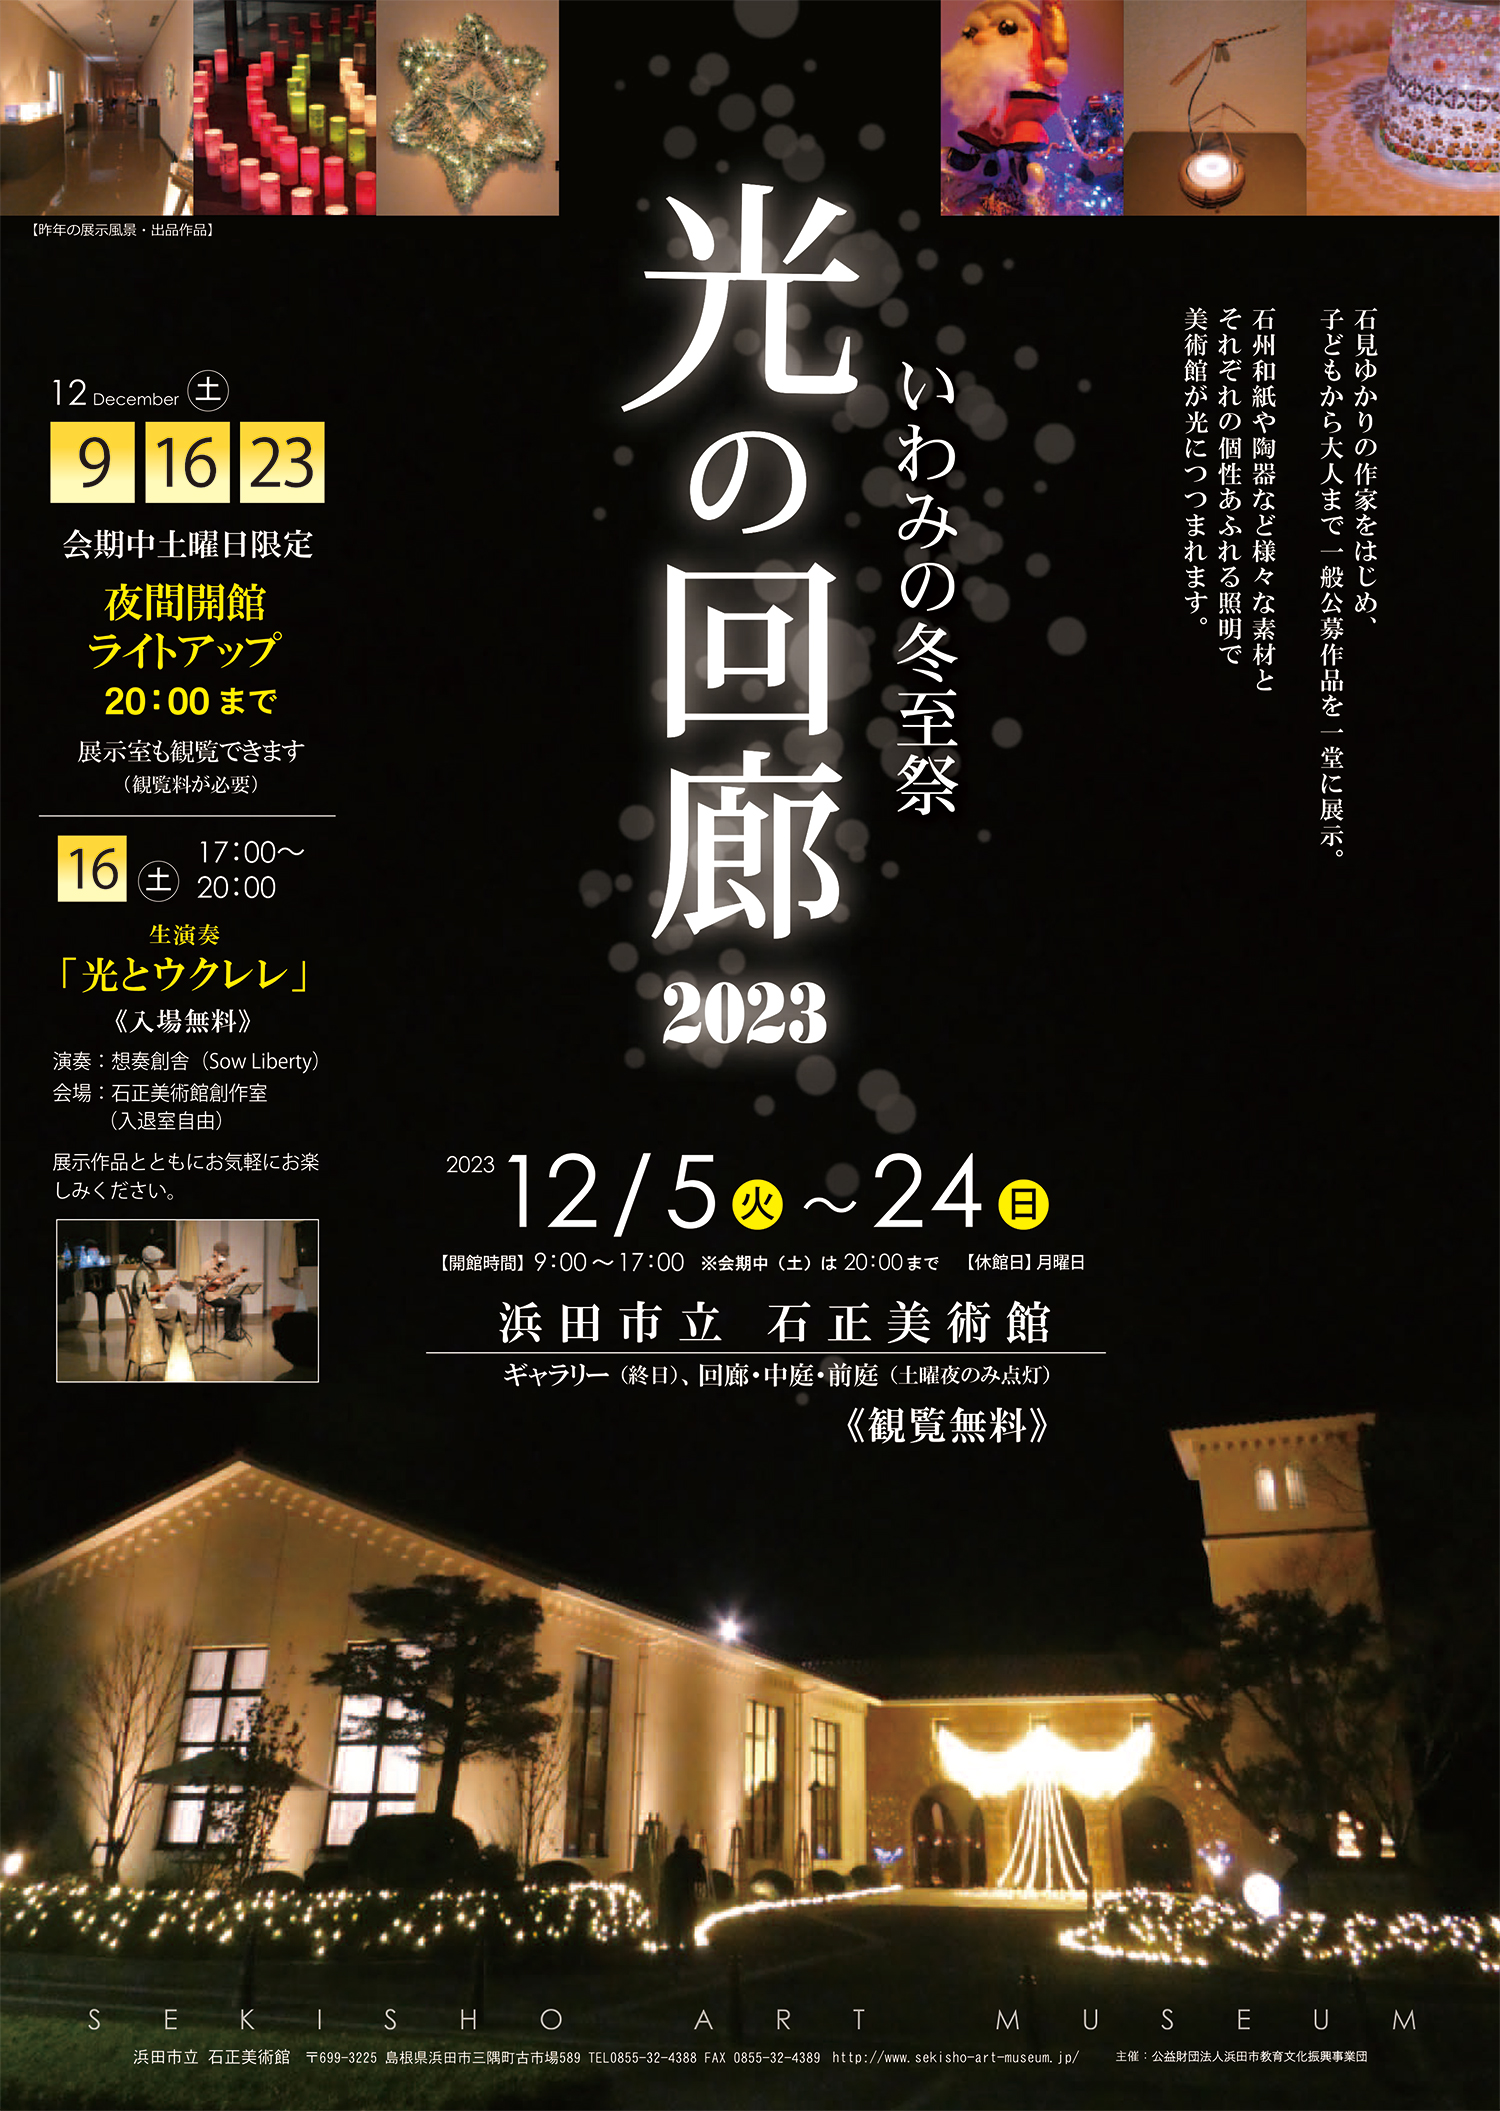 浜田市立石正美術館「いわみの冬至祭 光の回廊 2023」